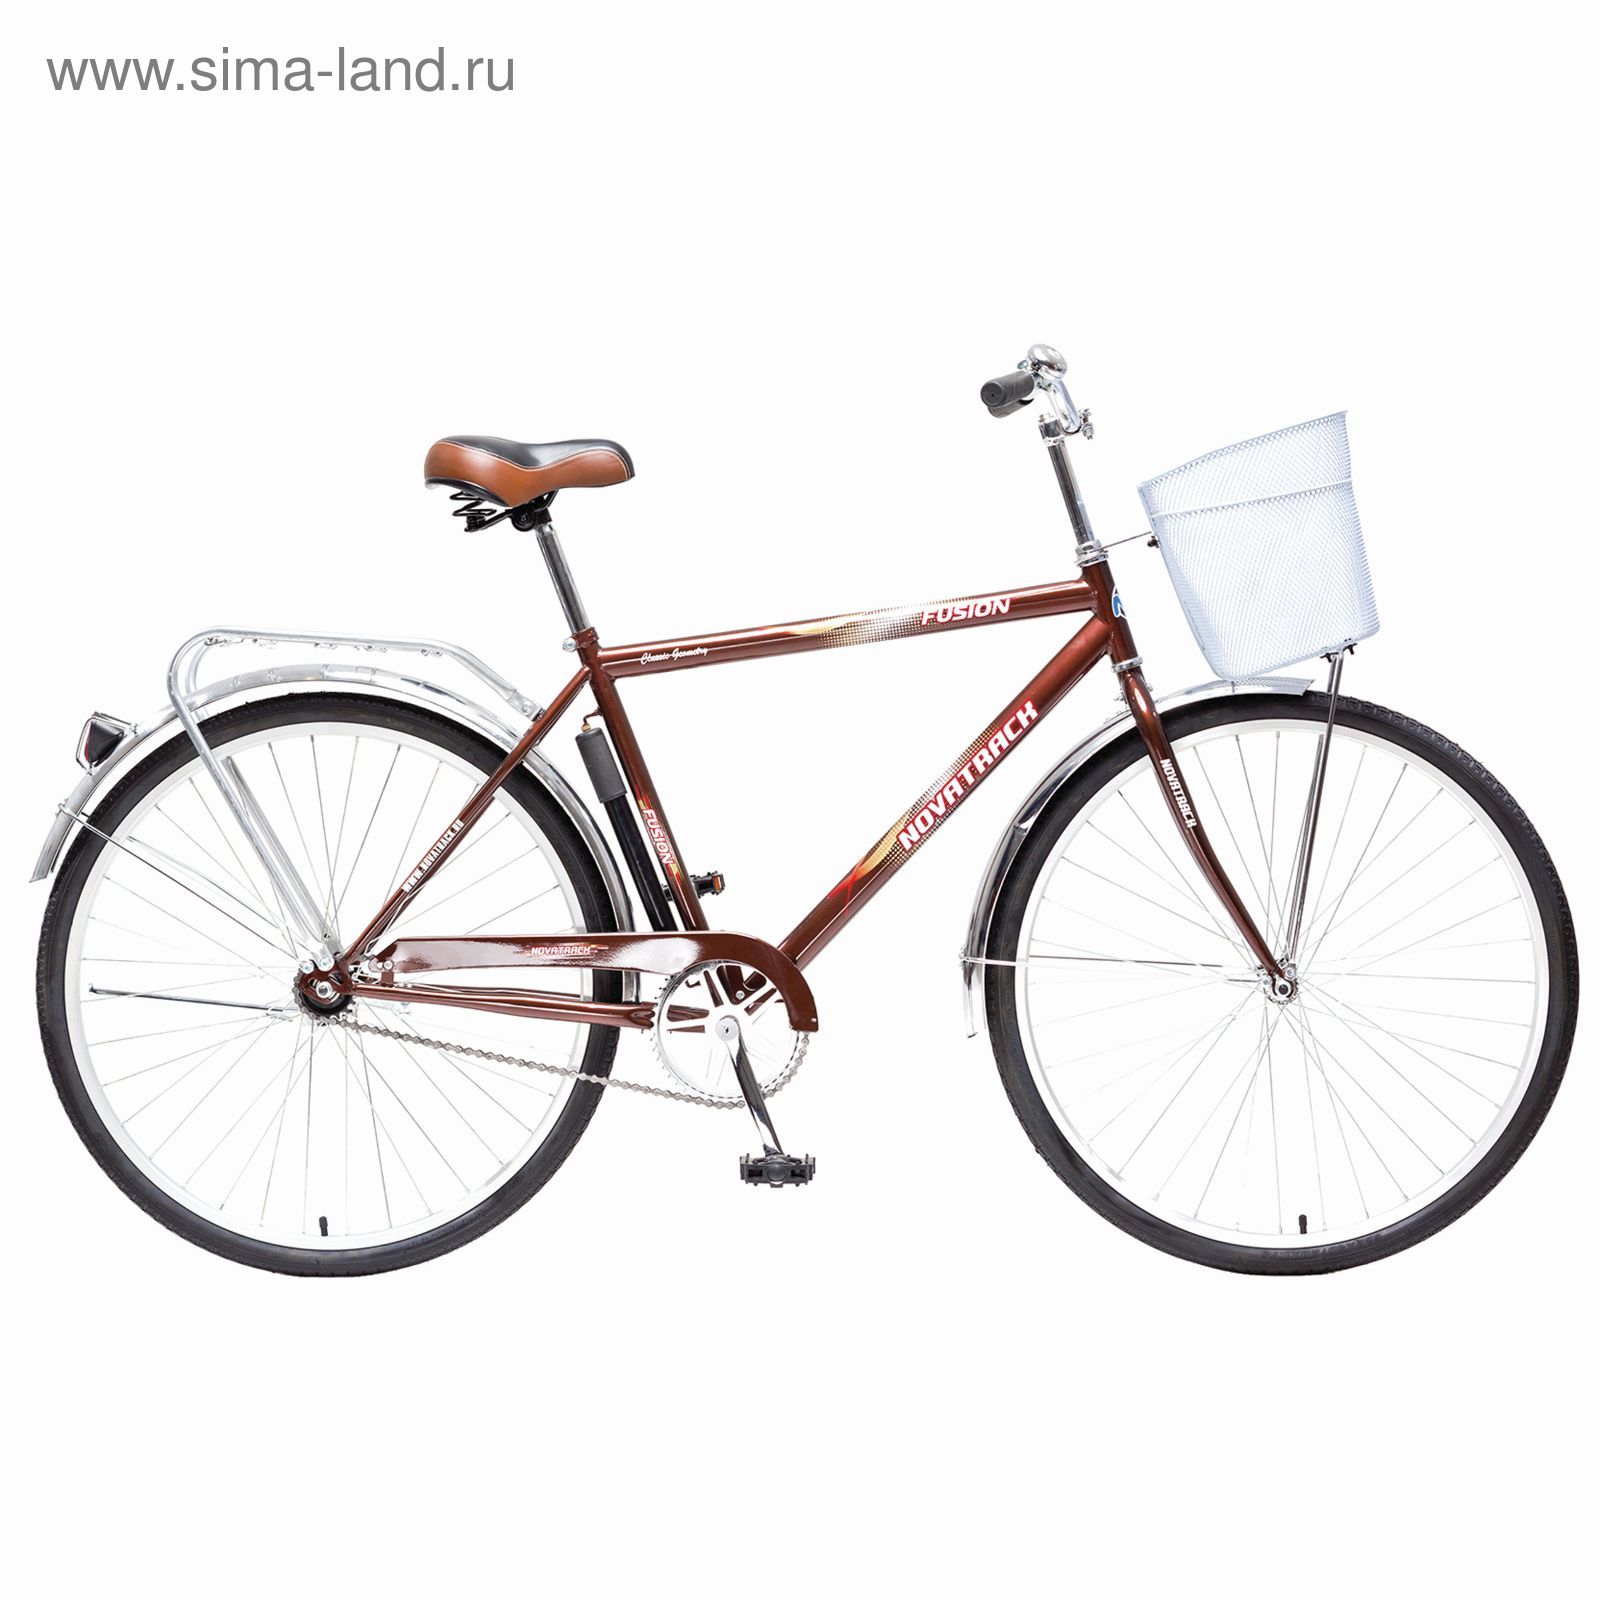 Велосипед 28" Novatrack Fusion, 2015, цвет коричневый, размер 20"